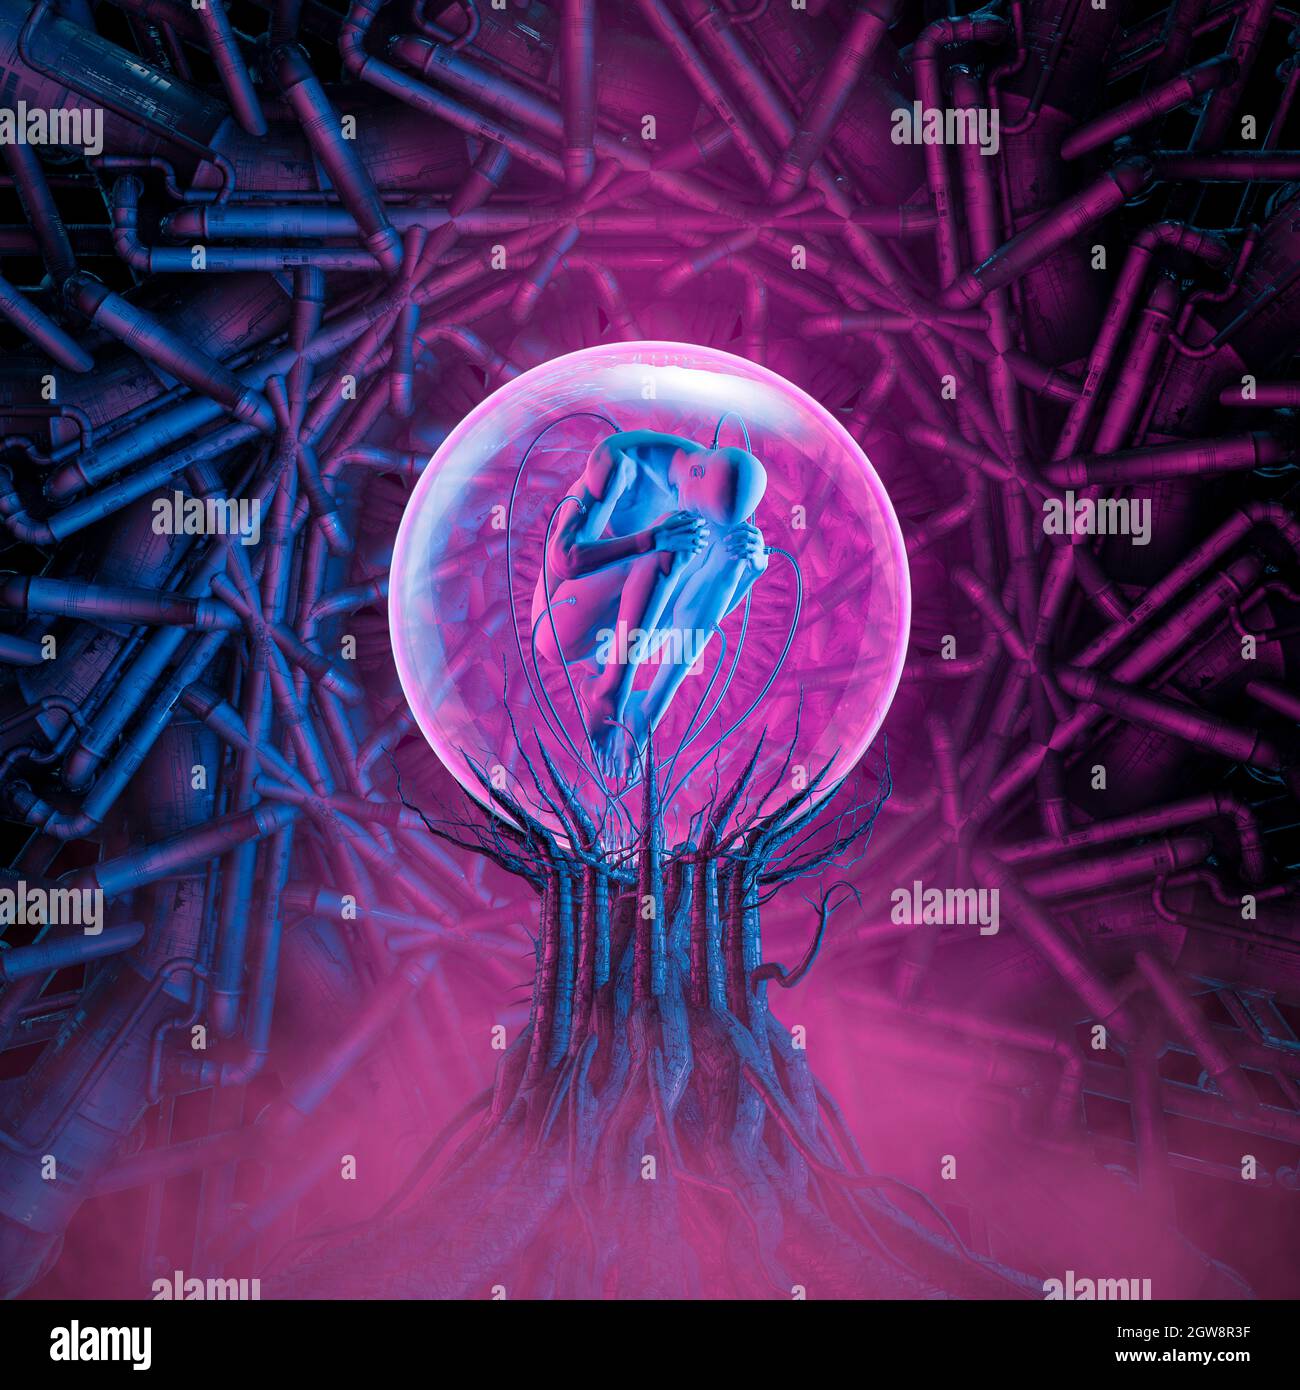 Seed of Life Clone Pod - 3D-Illustration einer Science-Fiction-Szene, die eine männliche Figur in einer fötalen Position im komplexen futuristischen Inkubator zeigt Stockfoto